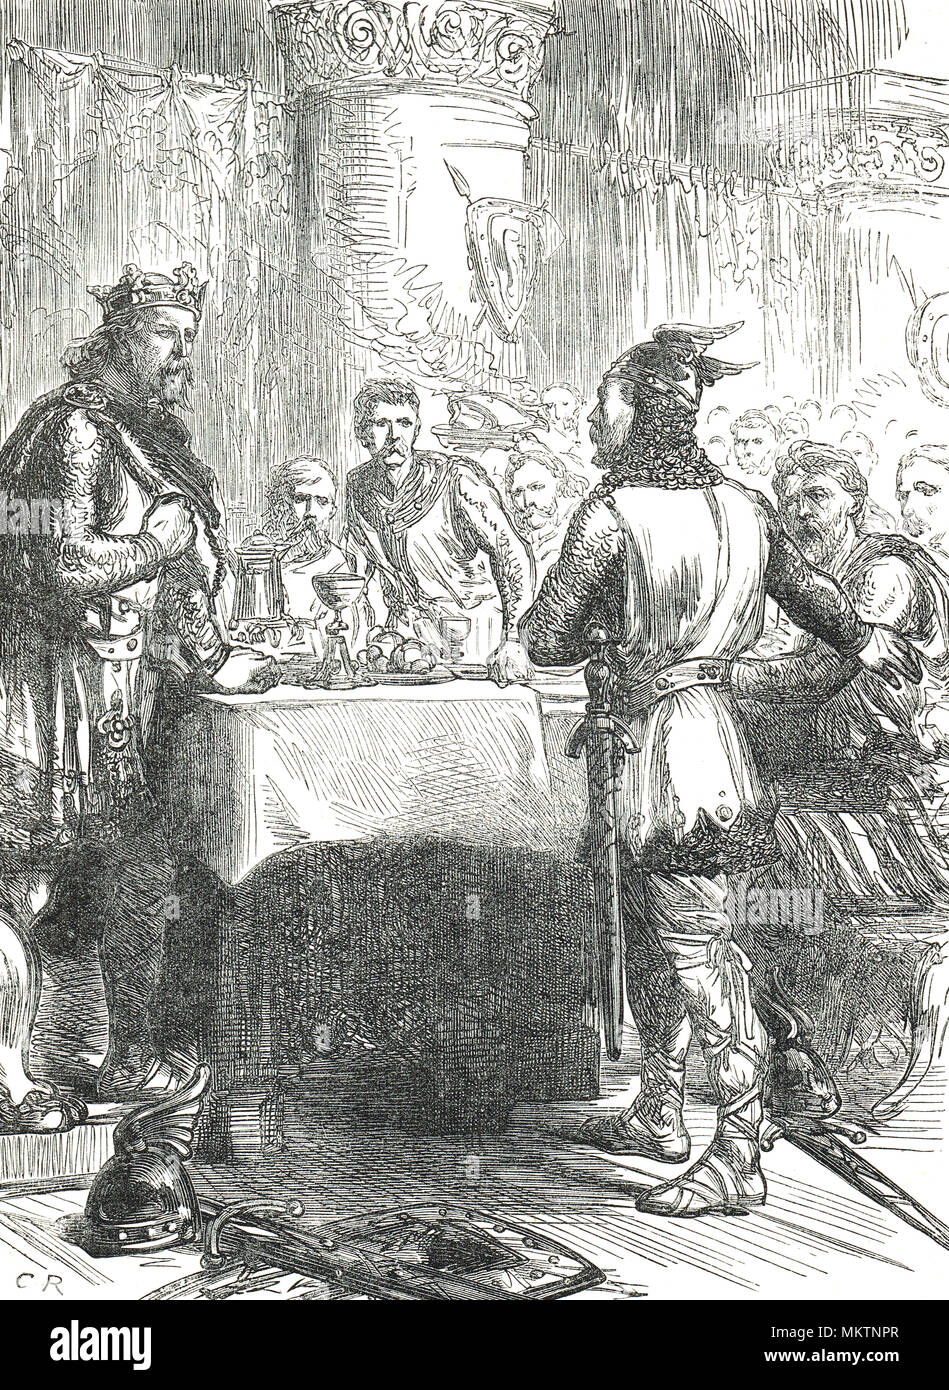 Harold Baar "Chez Boultan & Fils", l'annonce de l'invasion normande, peu après la bataille de Stamford Bridge, 1066 Banque D'Images